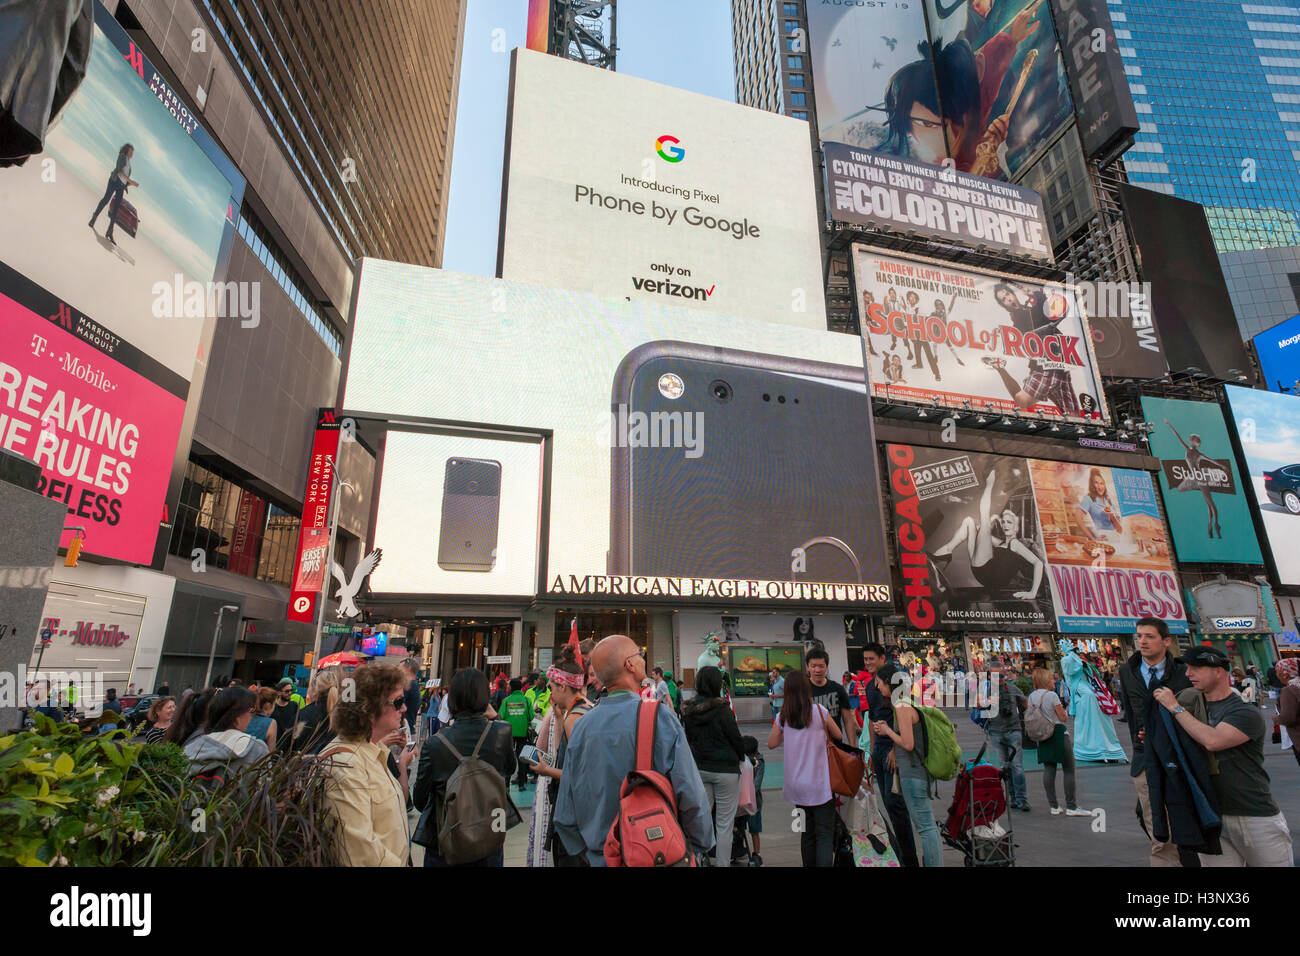 Un écran vidéo géant allumé dans Times Square à New York fait la promotion de la nouvelle gamme de smartphones Google, le pixel, vu le Vendredi, Octobre 7, 2016. (© Richard B. Levine) Banque D'Images